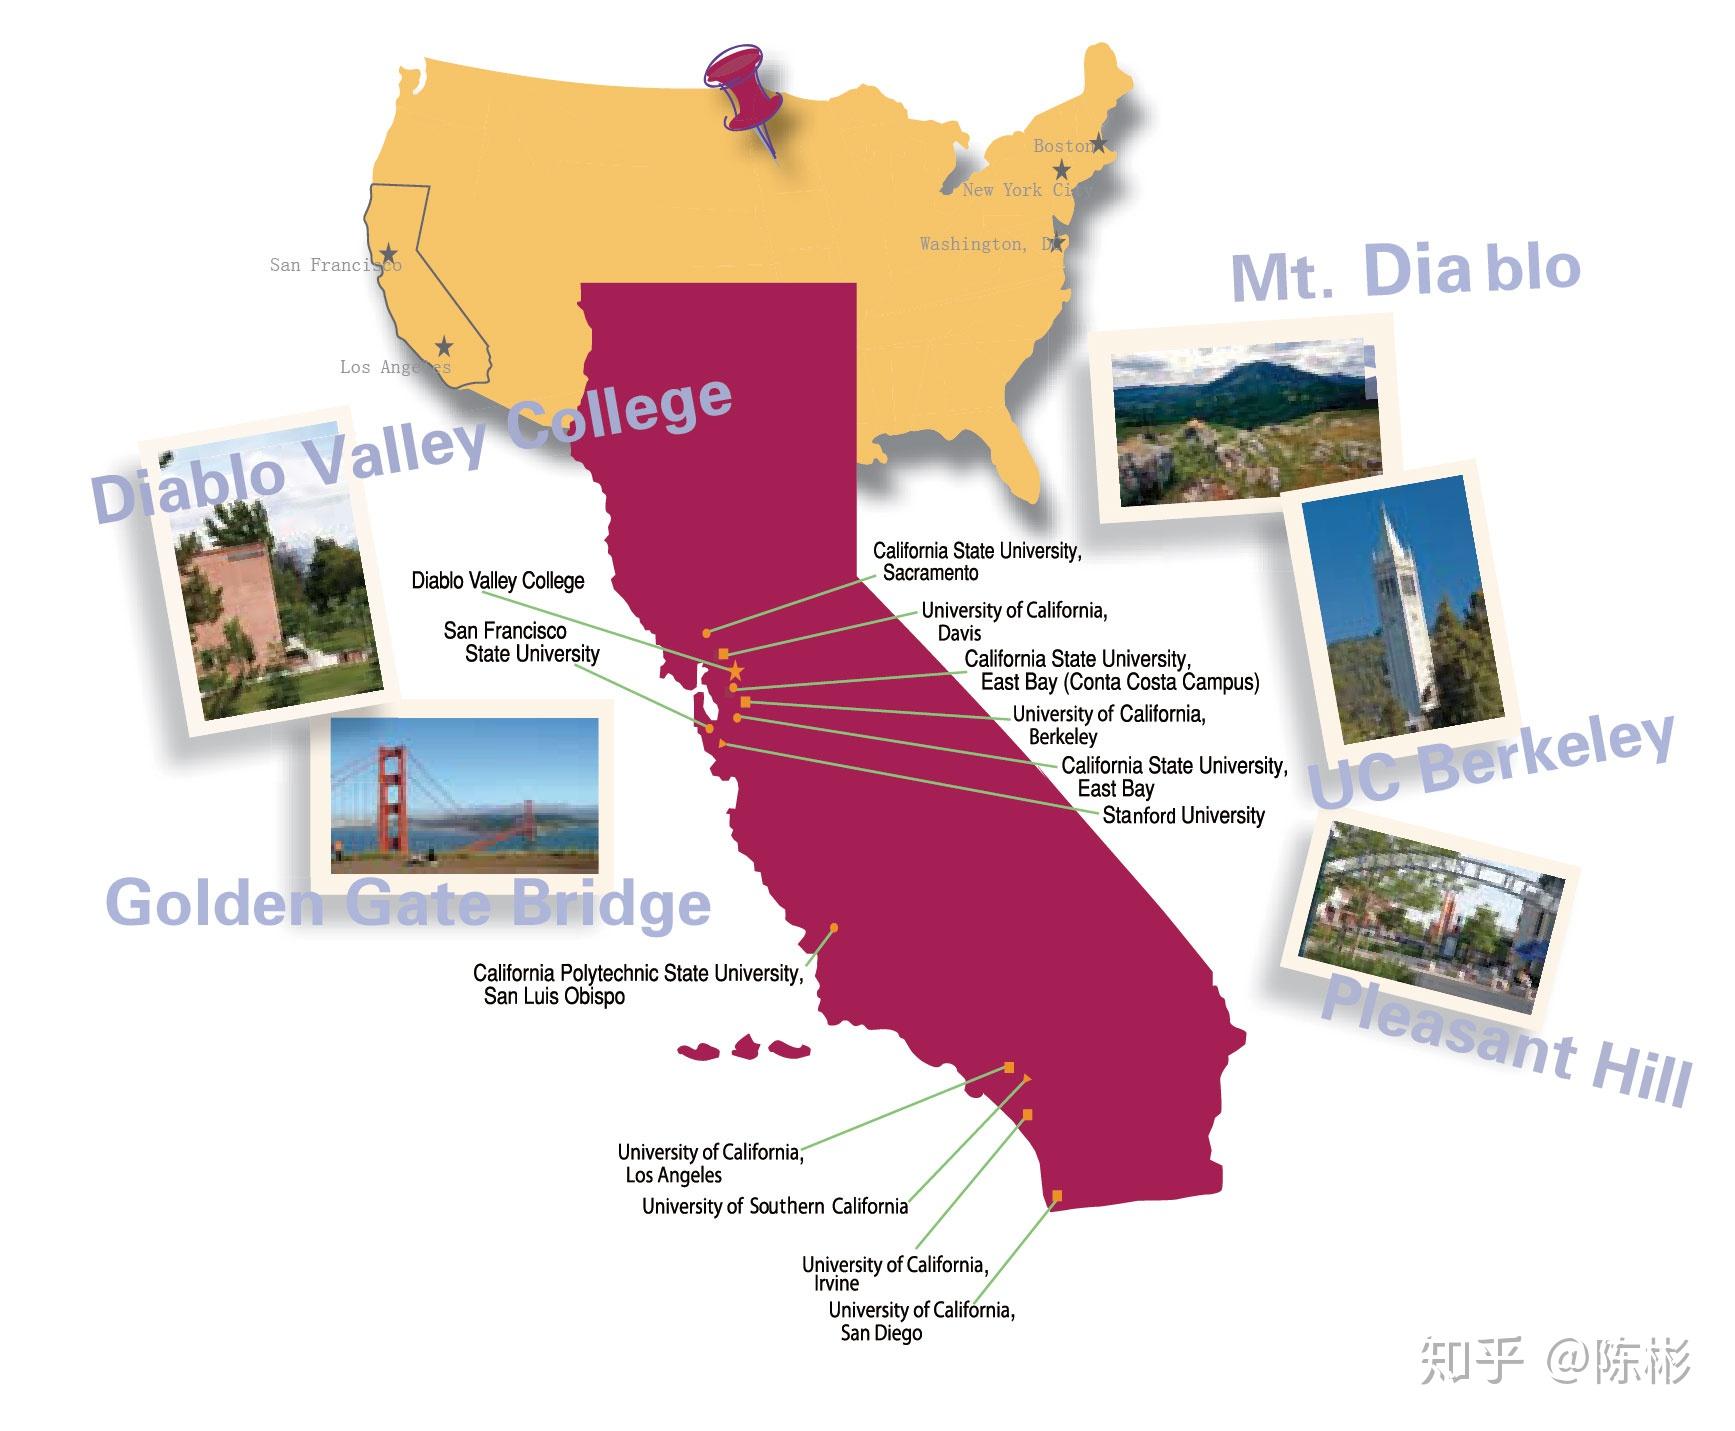 下面是uc(加州大学)和csu(加州州立大学)校园位置分布图,仅供参考